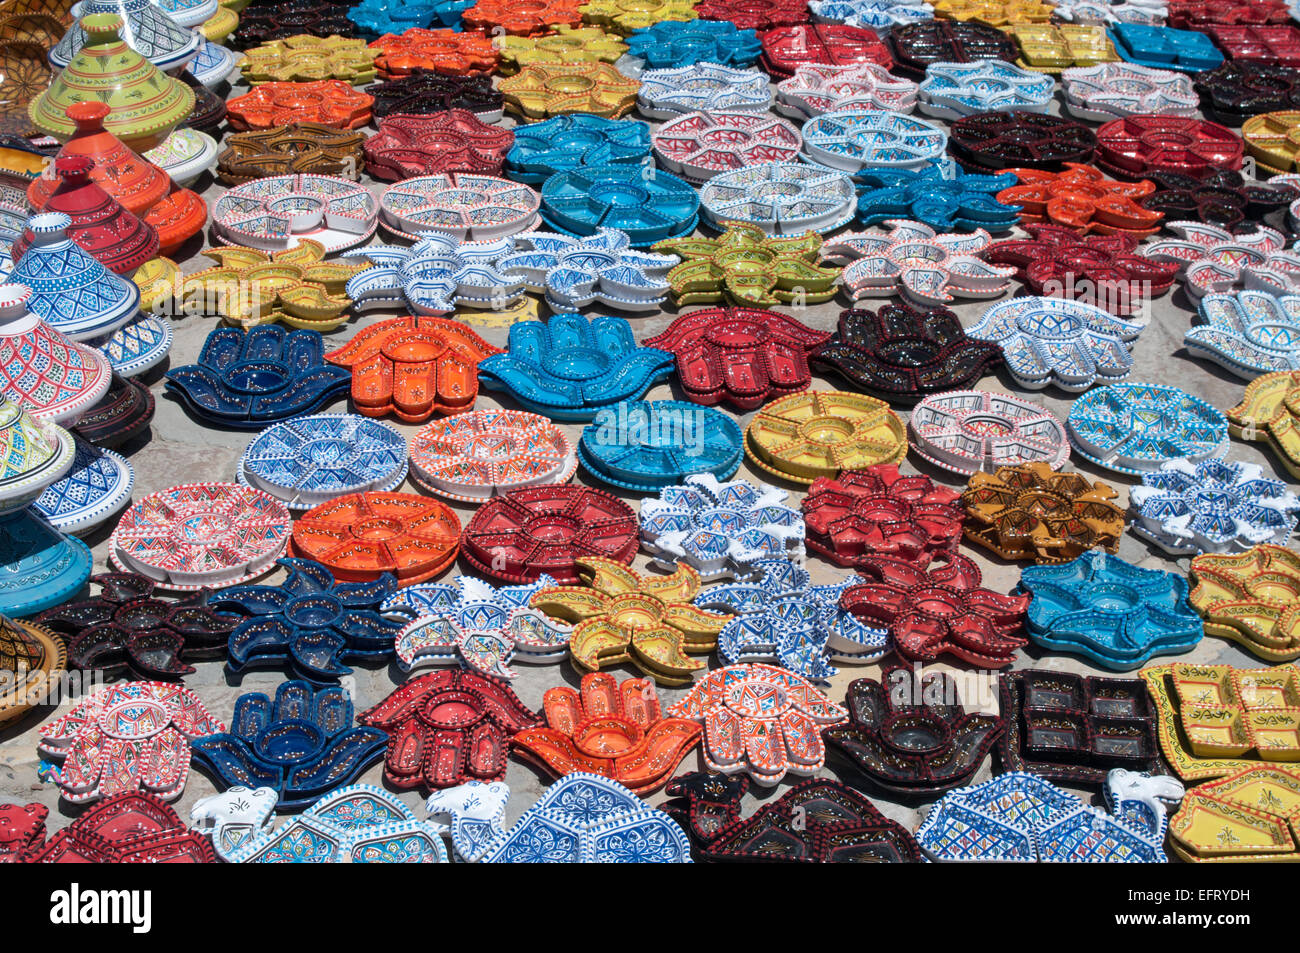 Arabo tradizionale ceramiche dipinte sono stabiliti sulla piazza. Tale vista è comune per il quartiere della medina in Tunisia. Foto Stock